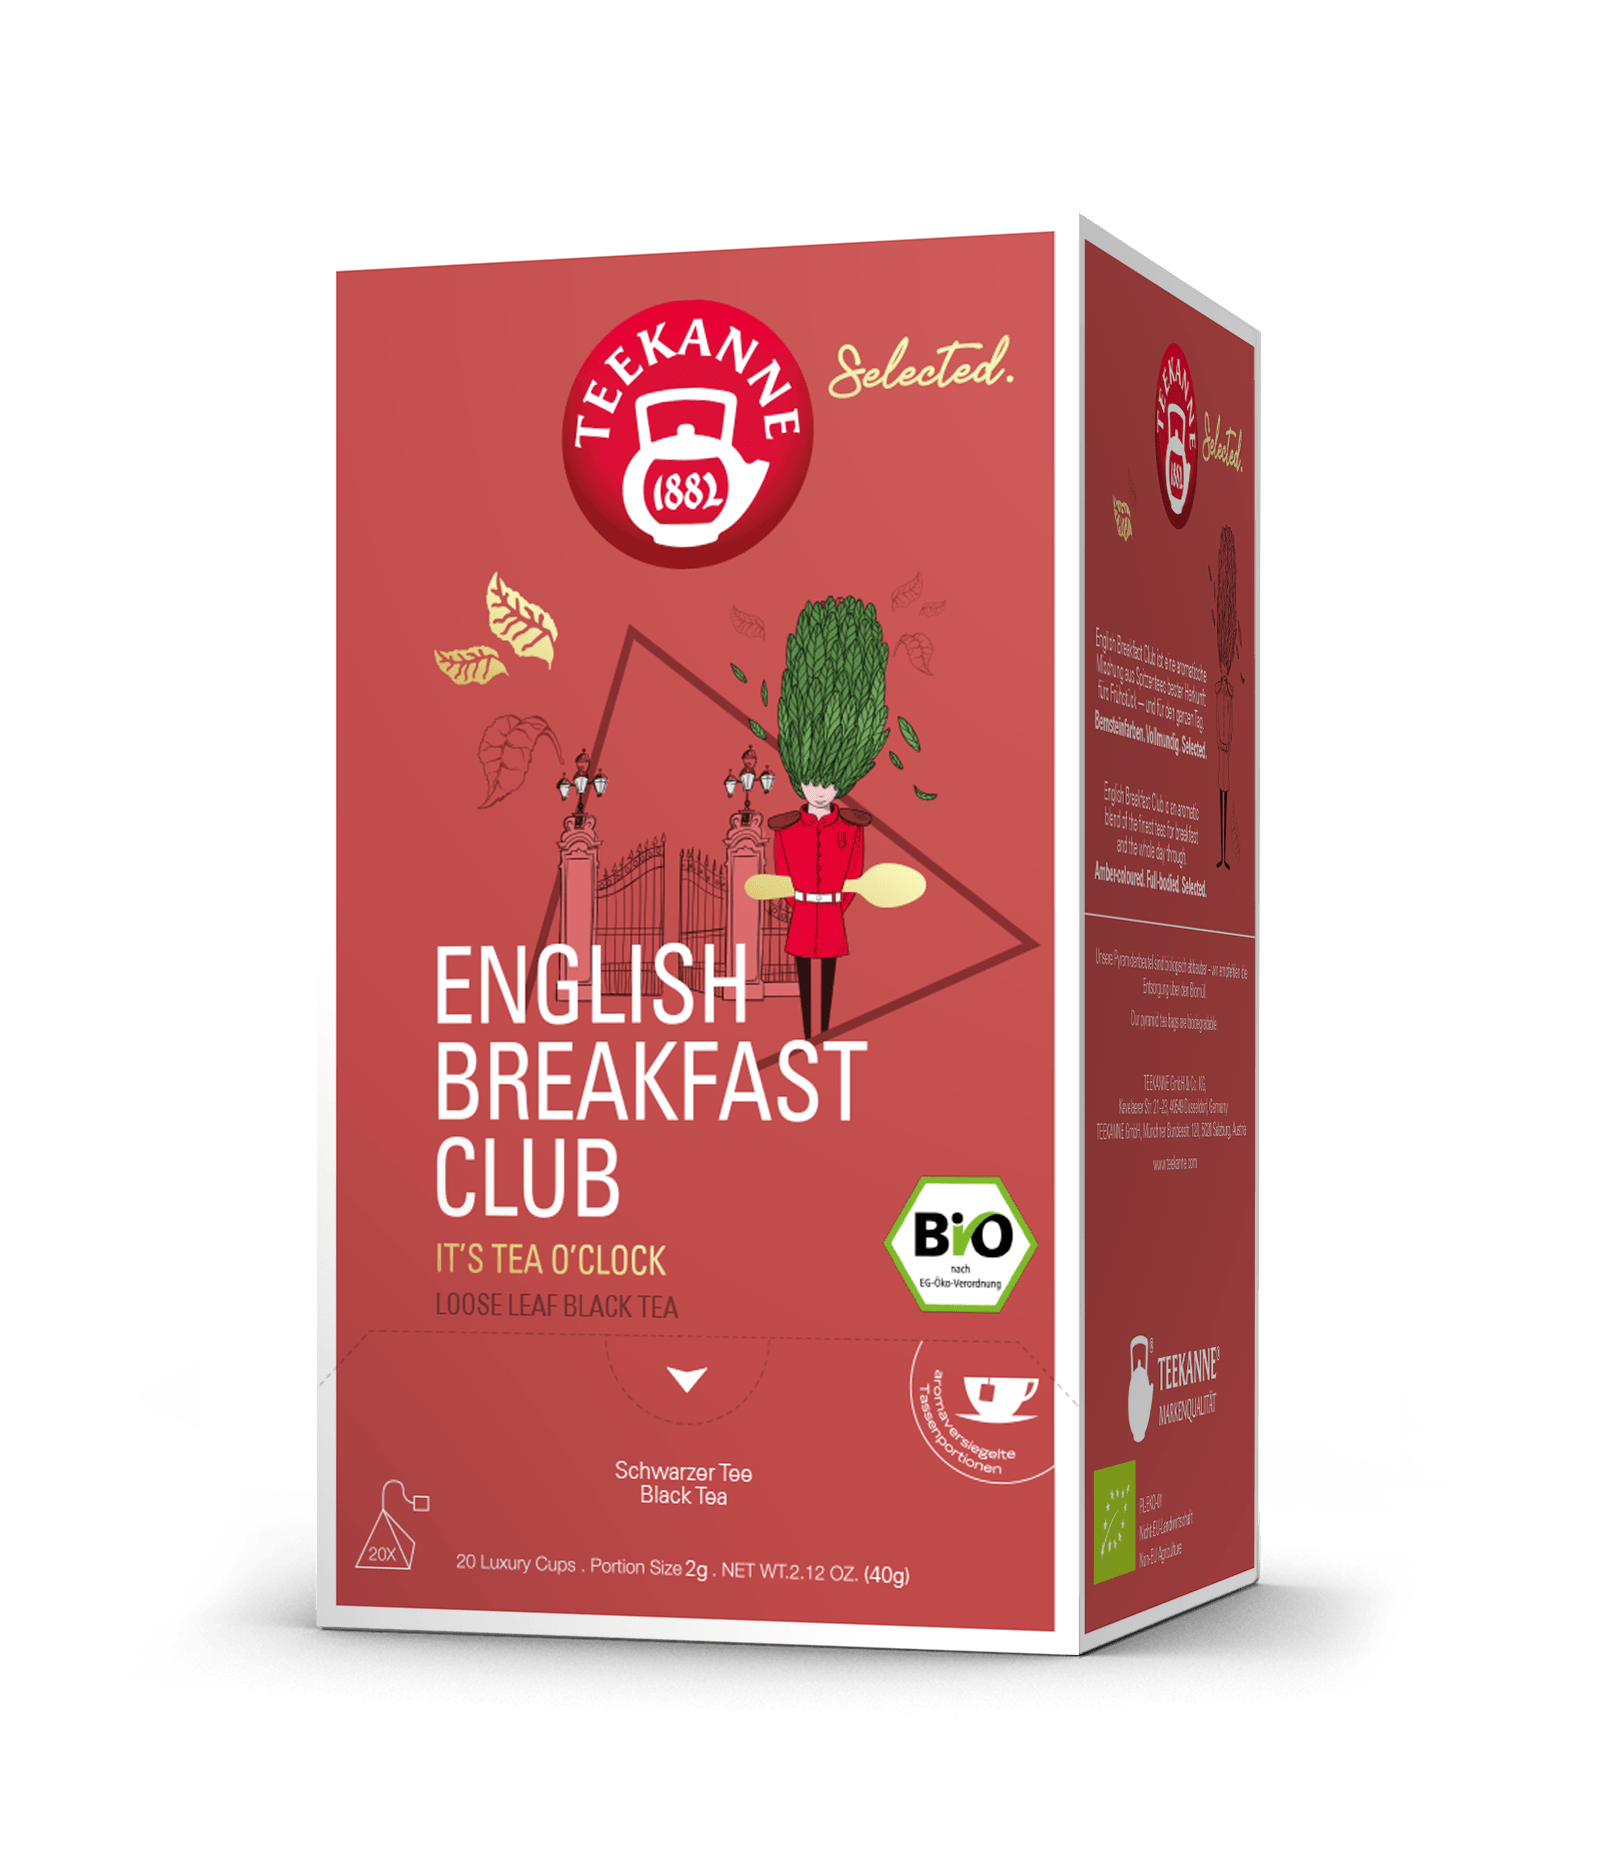 Luxury Cup English Breakfast Club